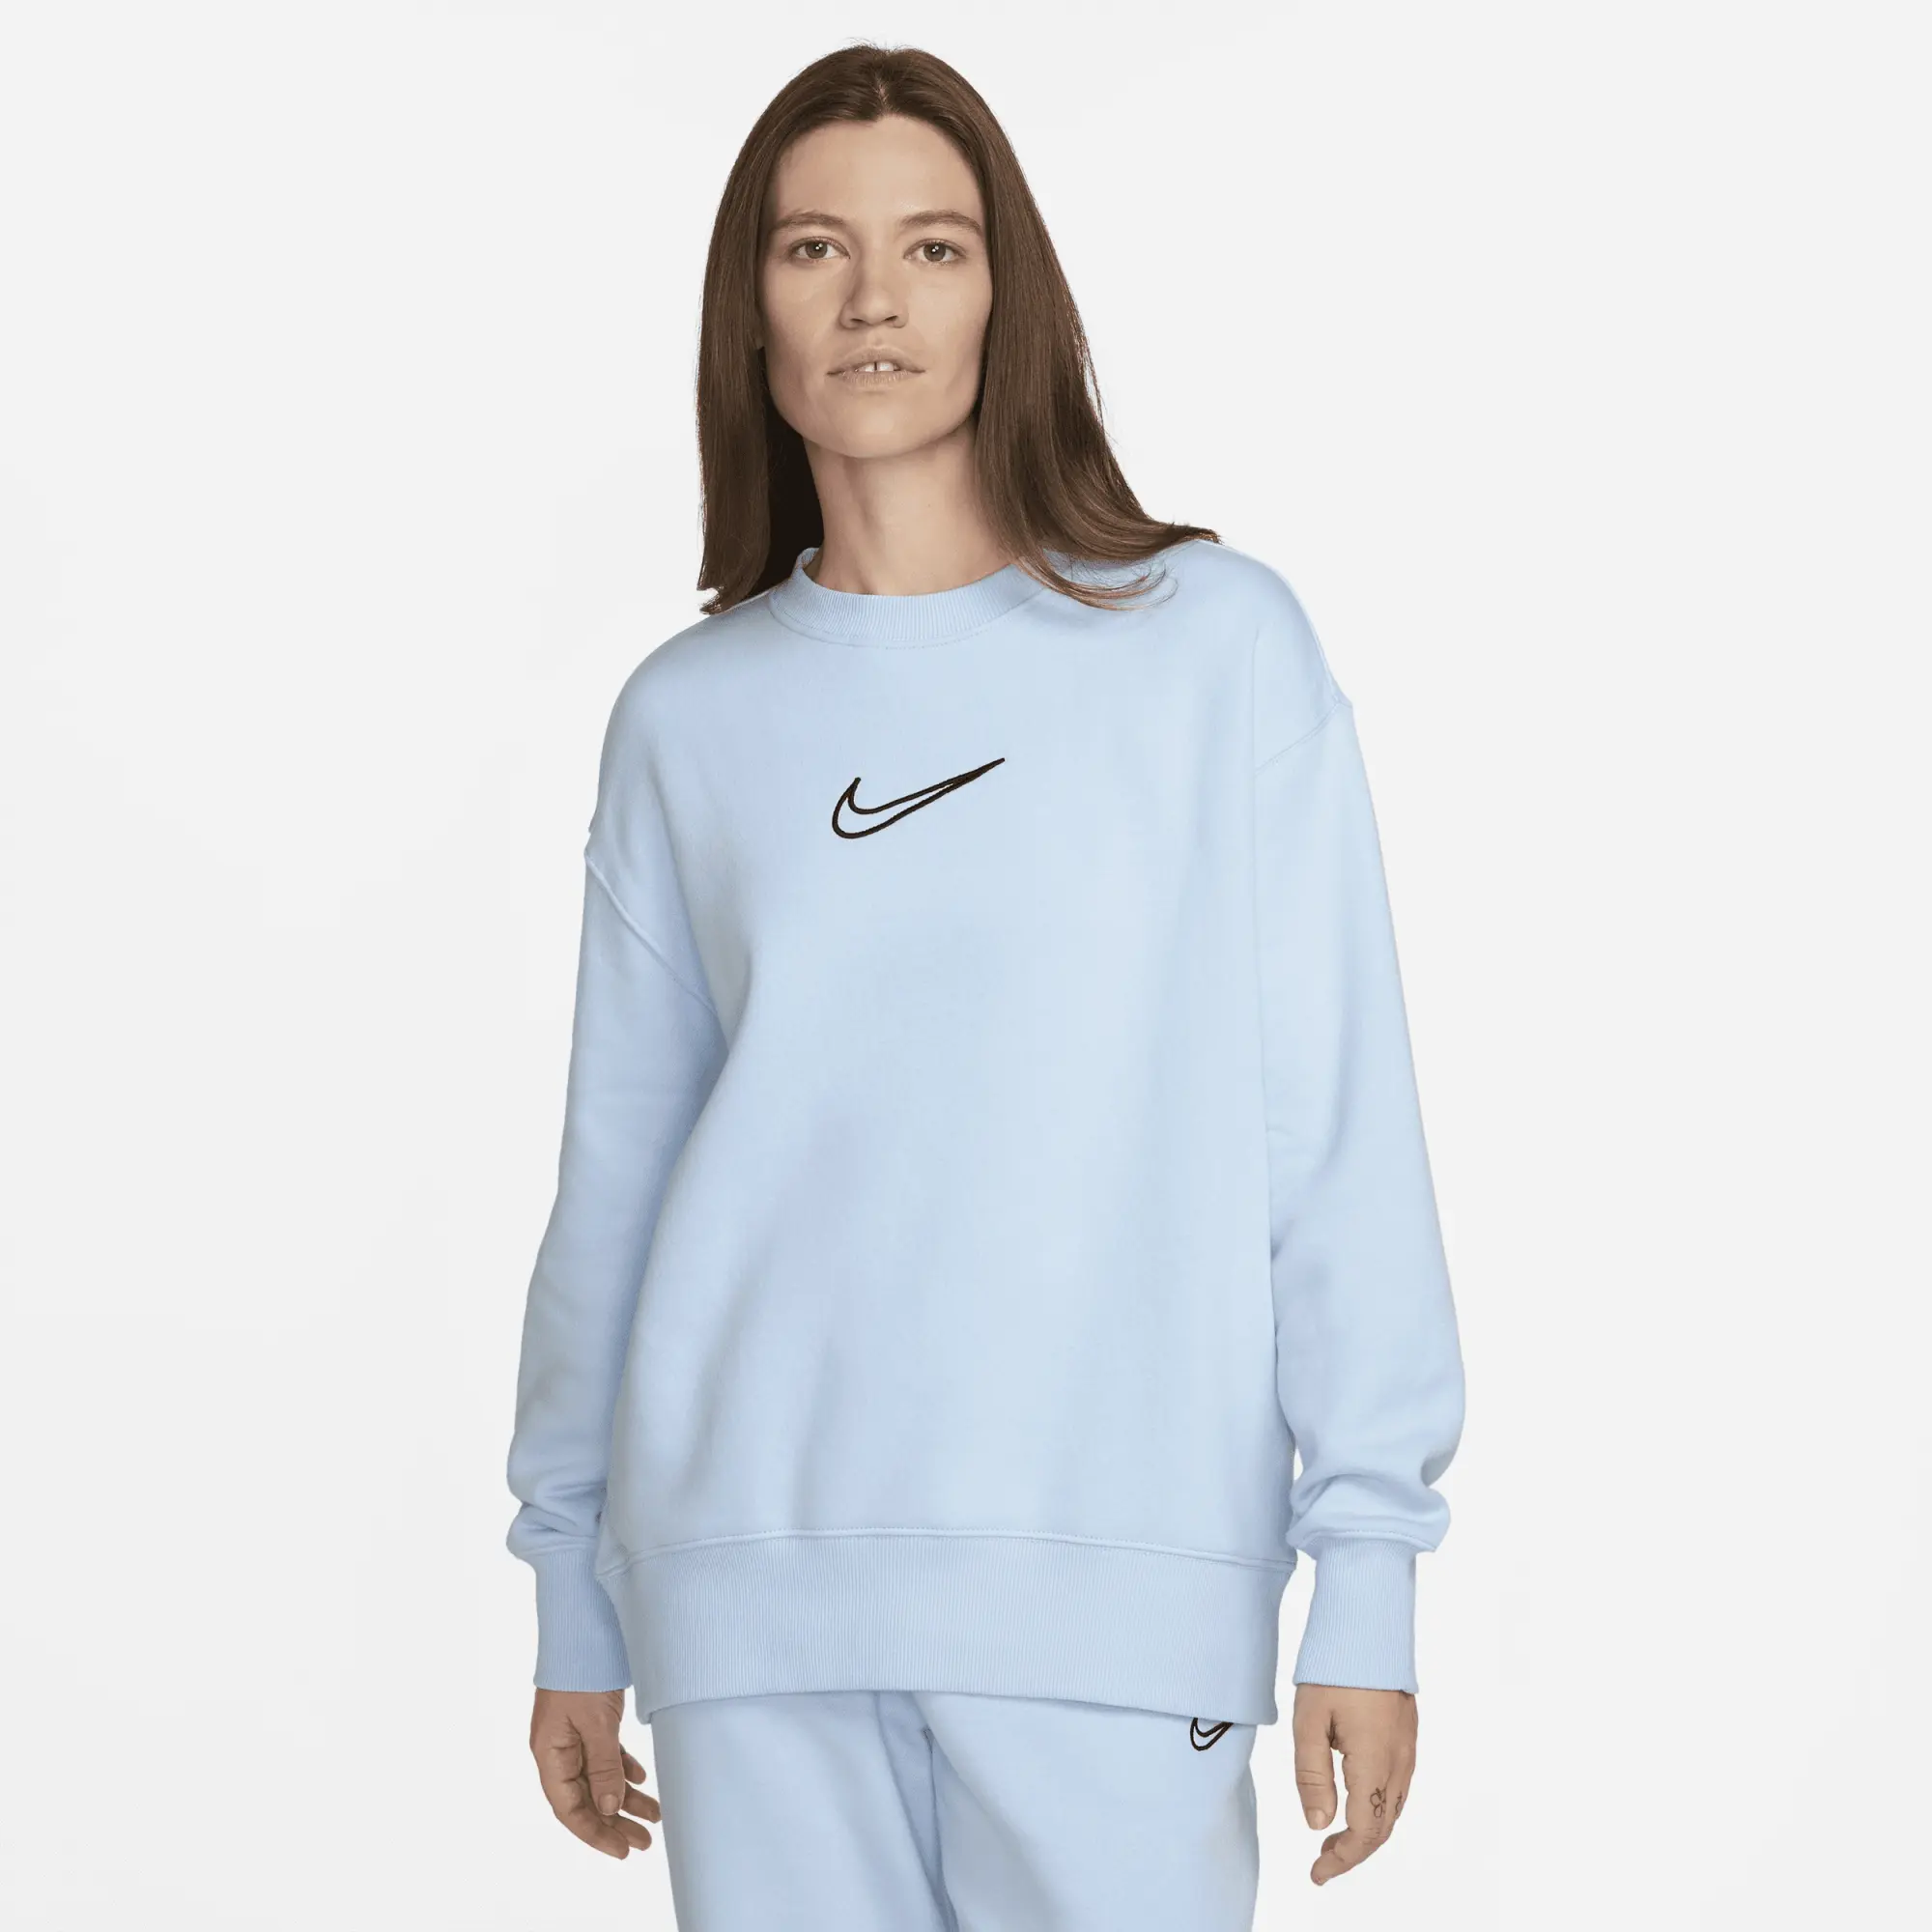 Stand Out in Nike Women's Phoenix Fleece Crew-Neck Sweatshirt | FJ1016 ...